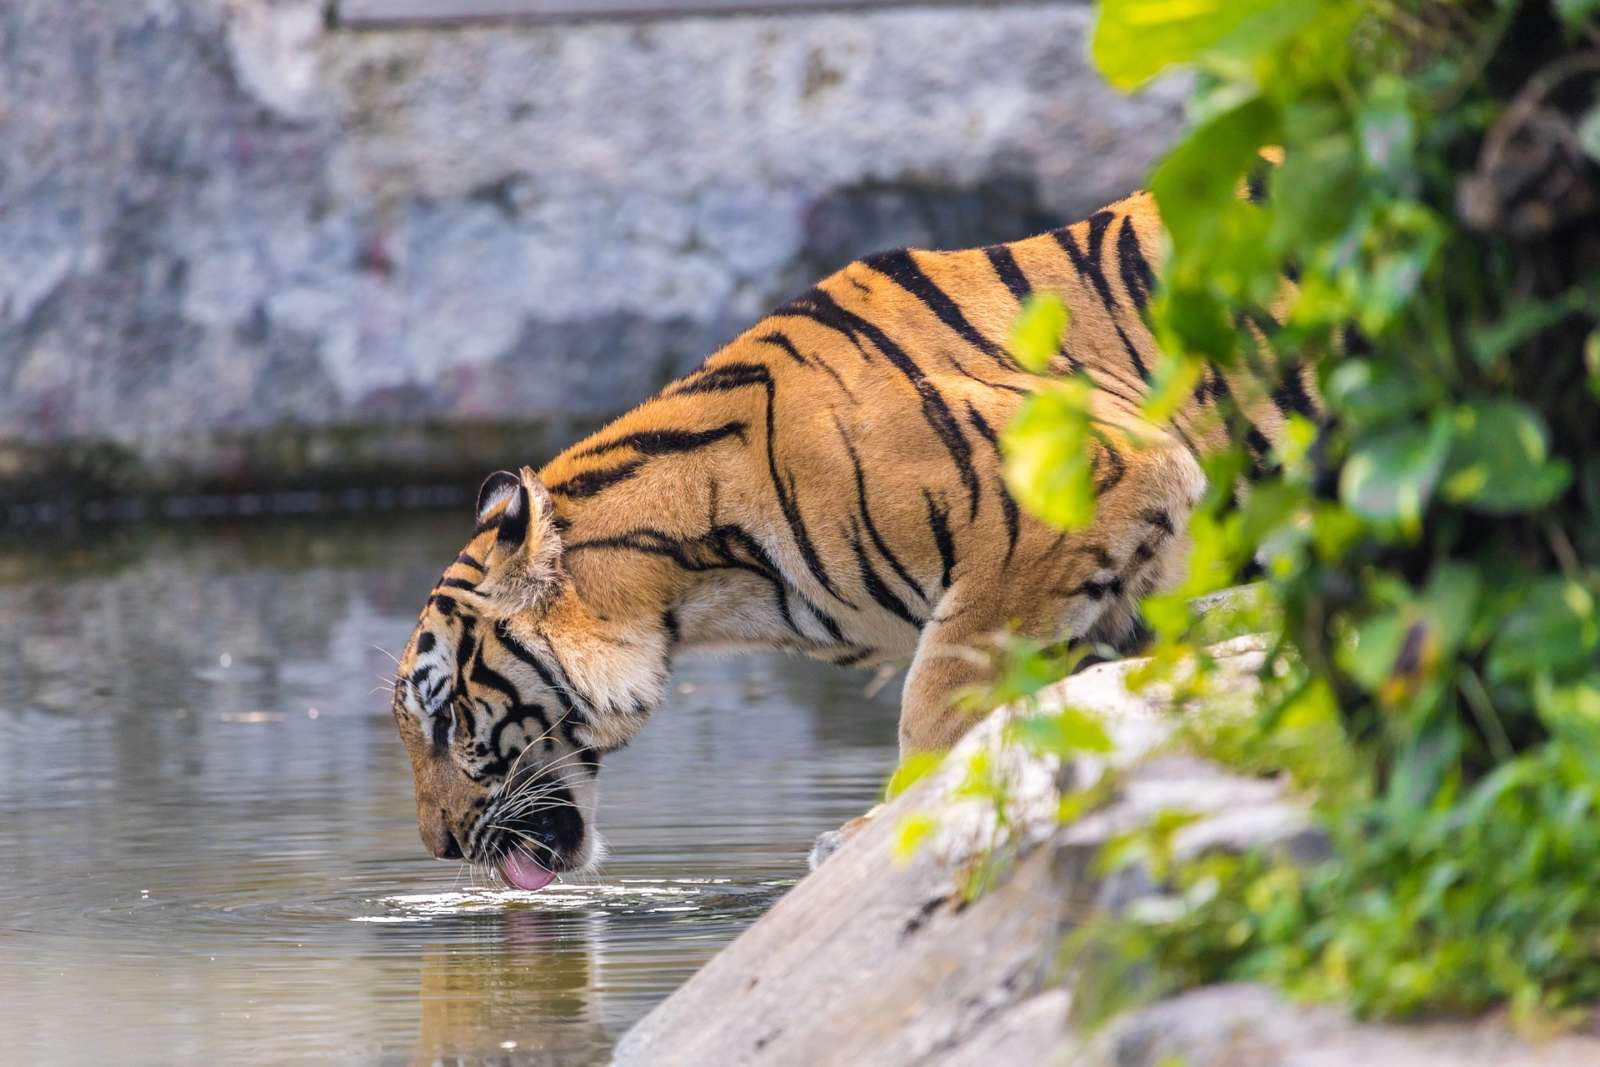 Тигровый зоопарк в Таиланде закрылся навсегда